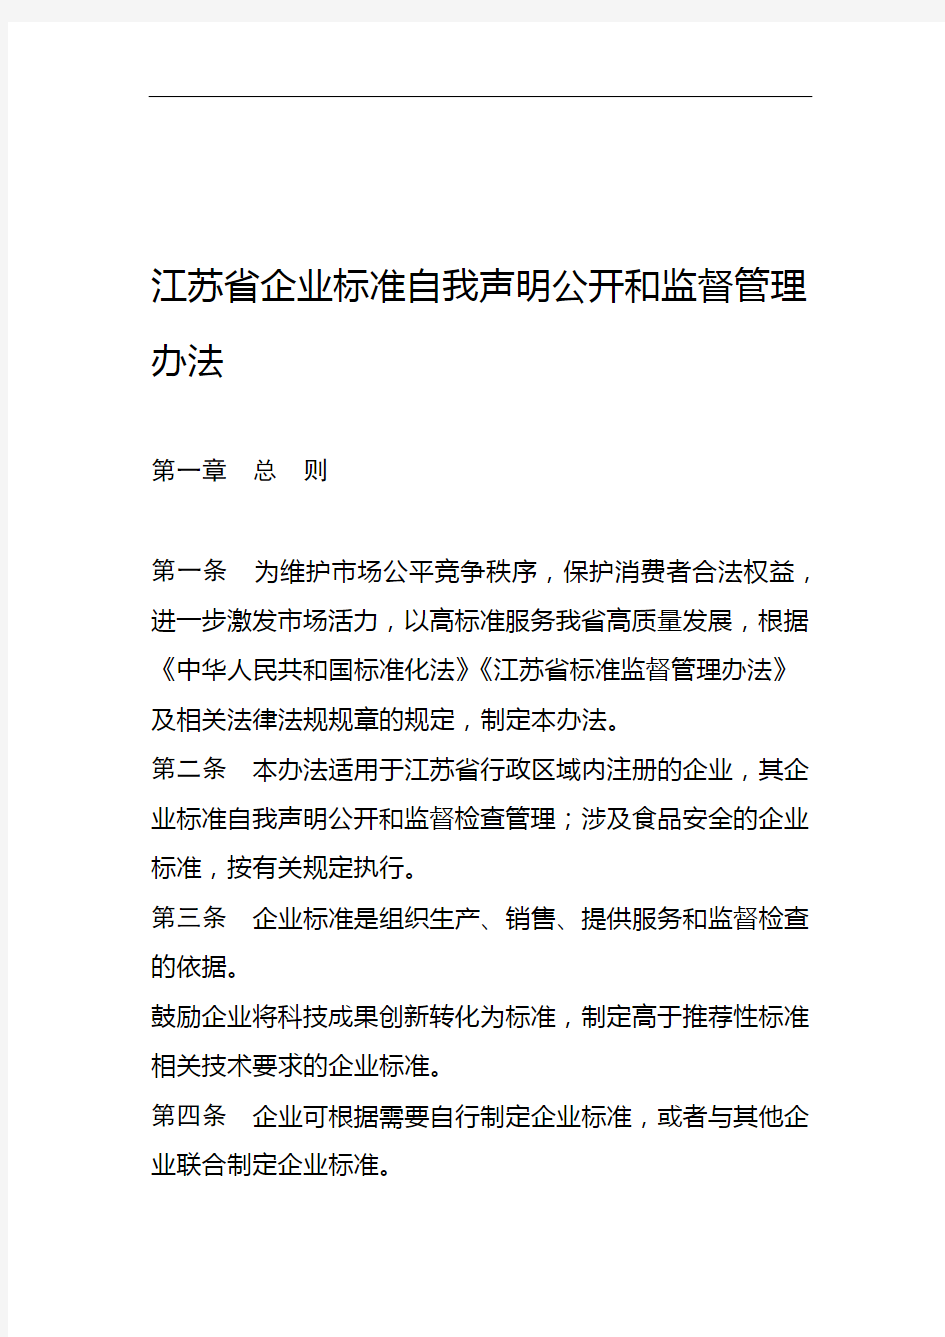 江苏省企业标准自我声明公开和监督管理办法